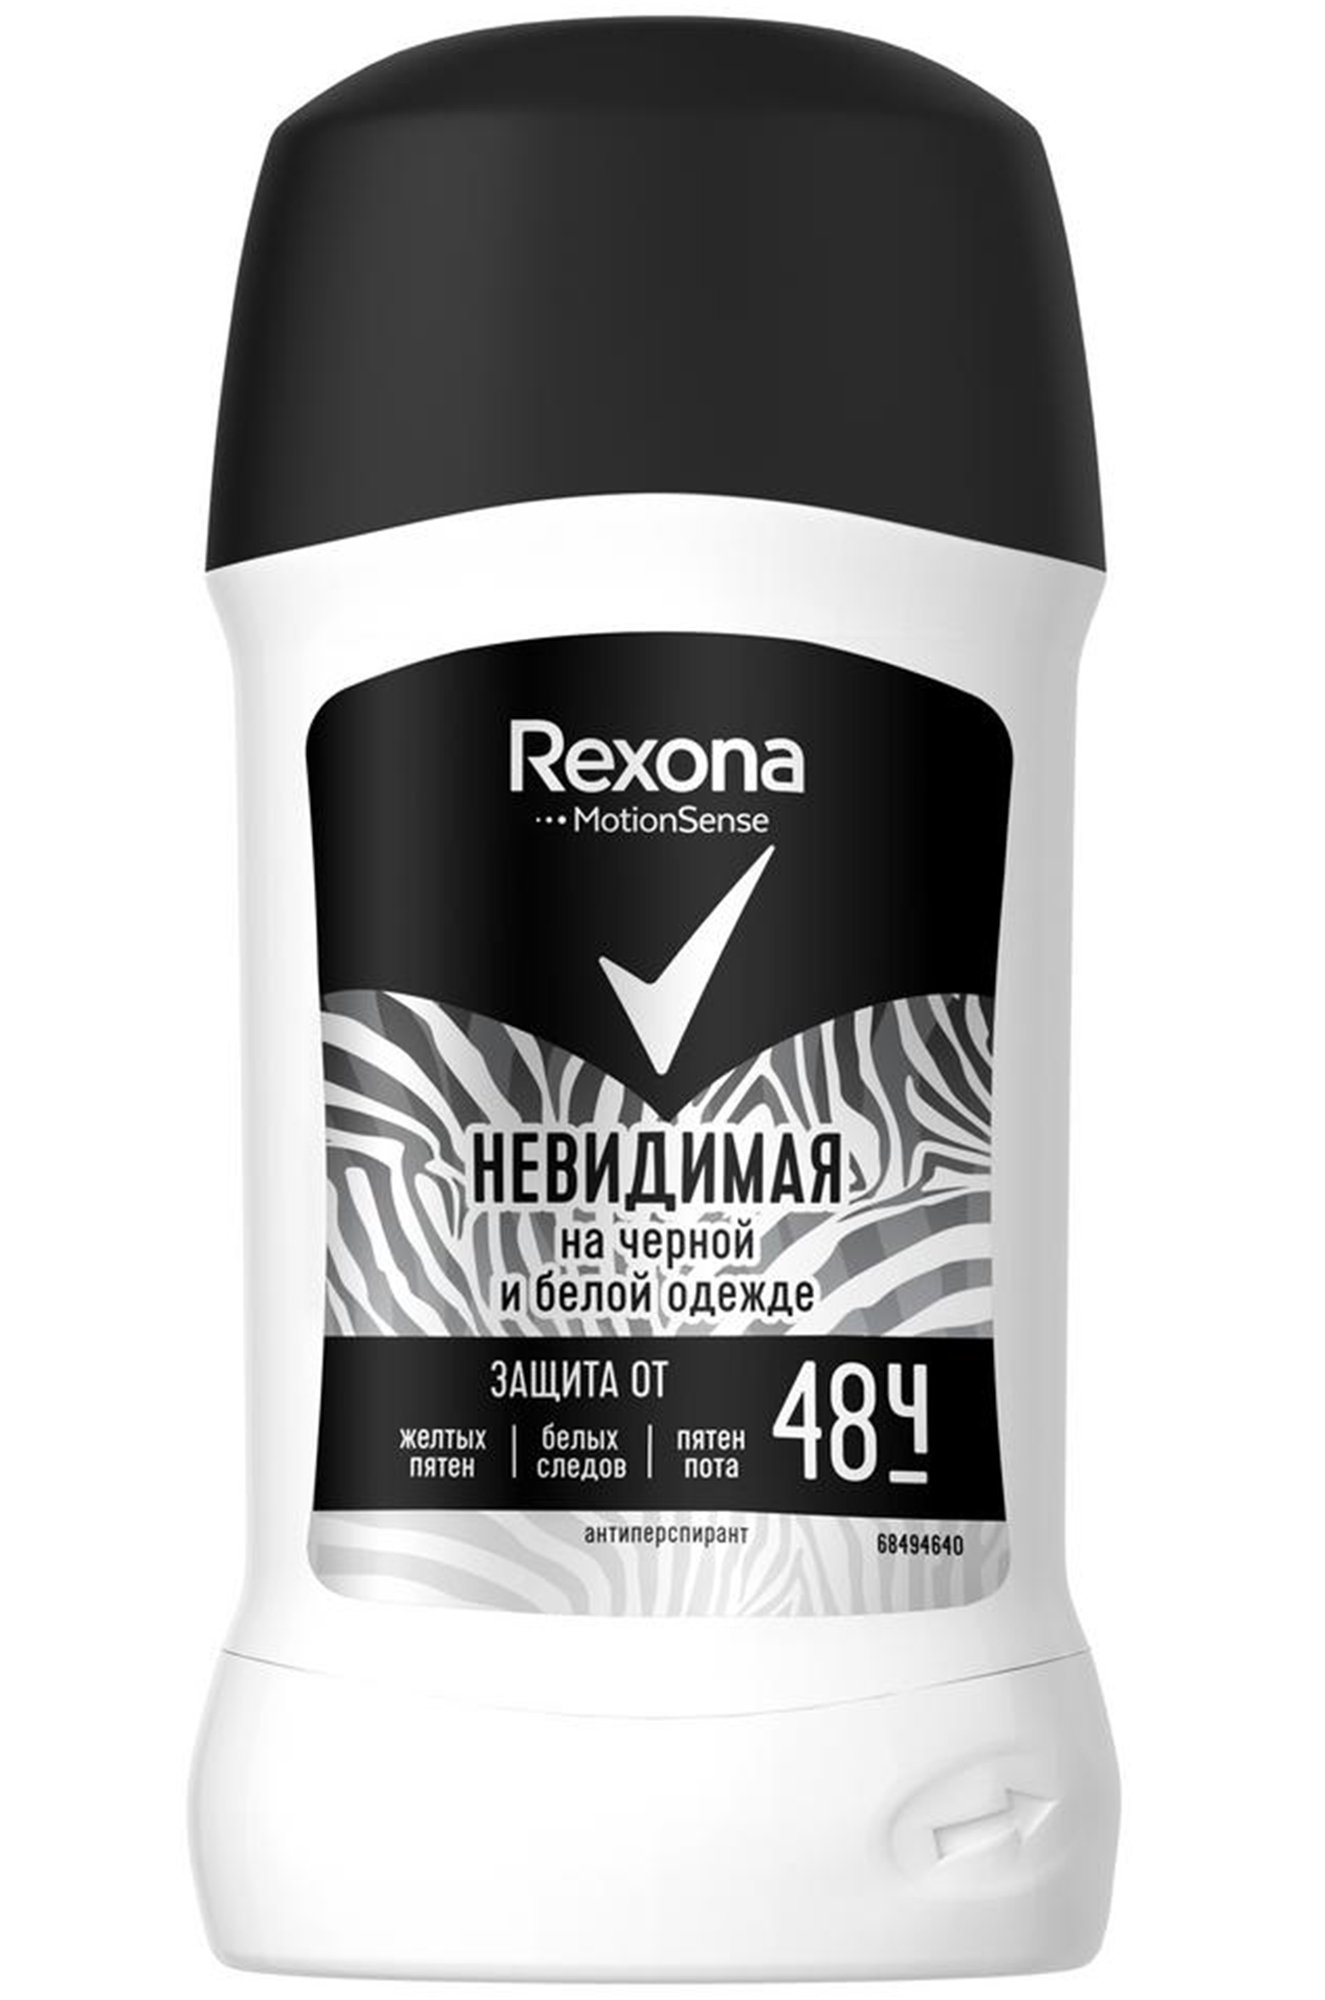 Дезодорант-антиперспирант карандаш Невидимая на черной и белой одежде 40 мл Rexona